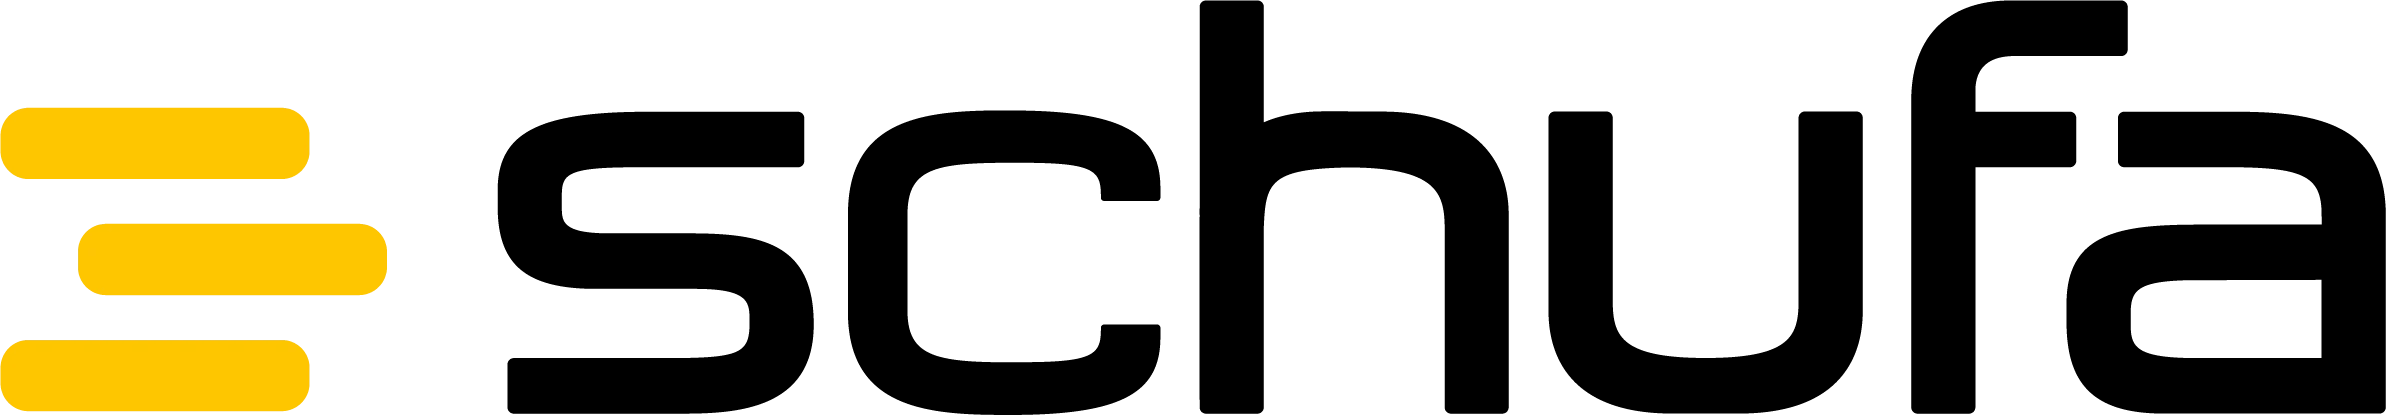 Schufa Logo - Online Glücksspiel & die Kreditwürdigkeit